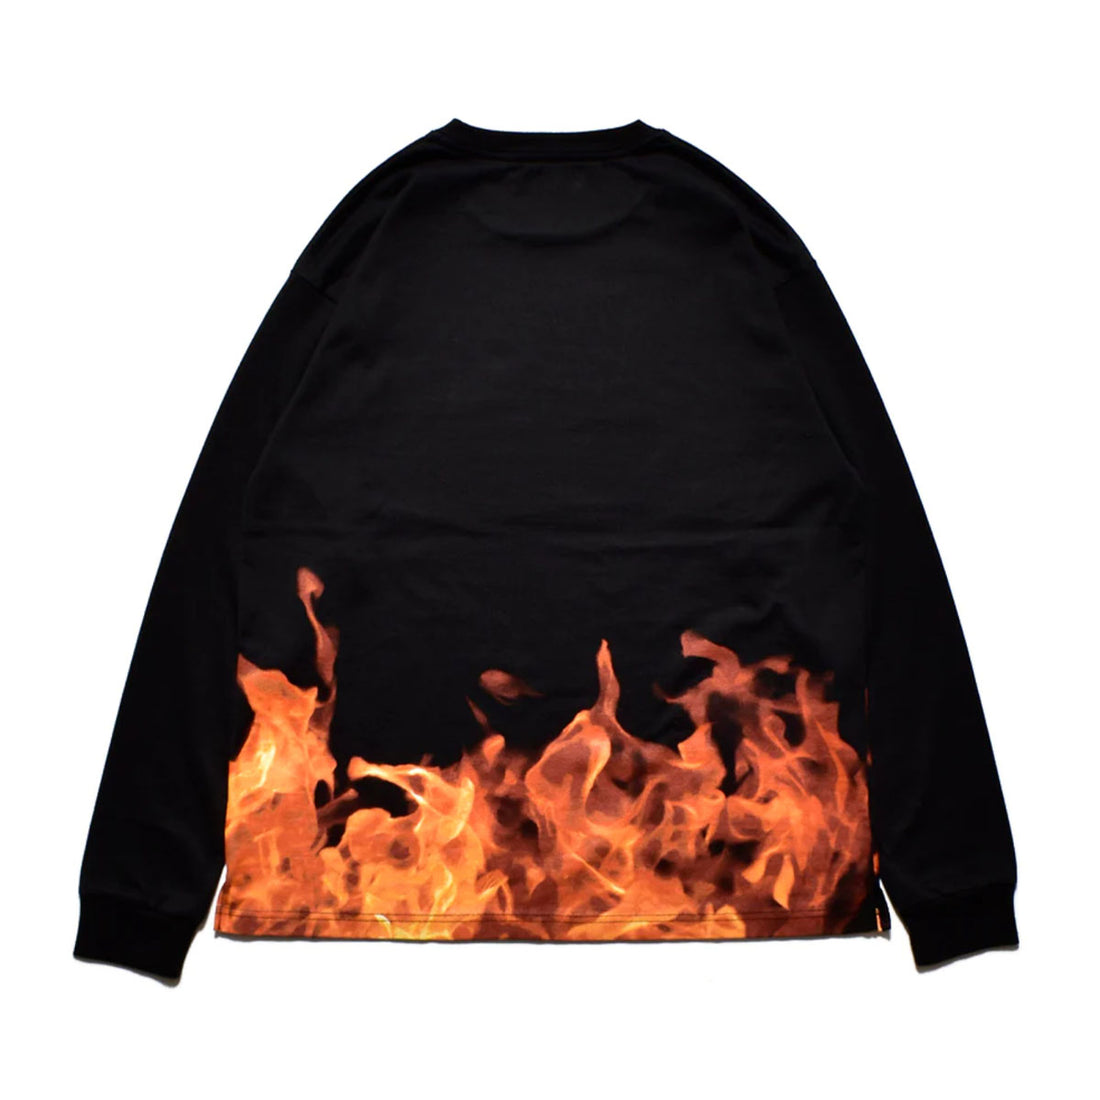 [MINEDENIM]Fire Pattern L/S T-Shirt/BLACK(2308-6005)